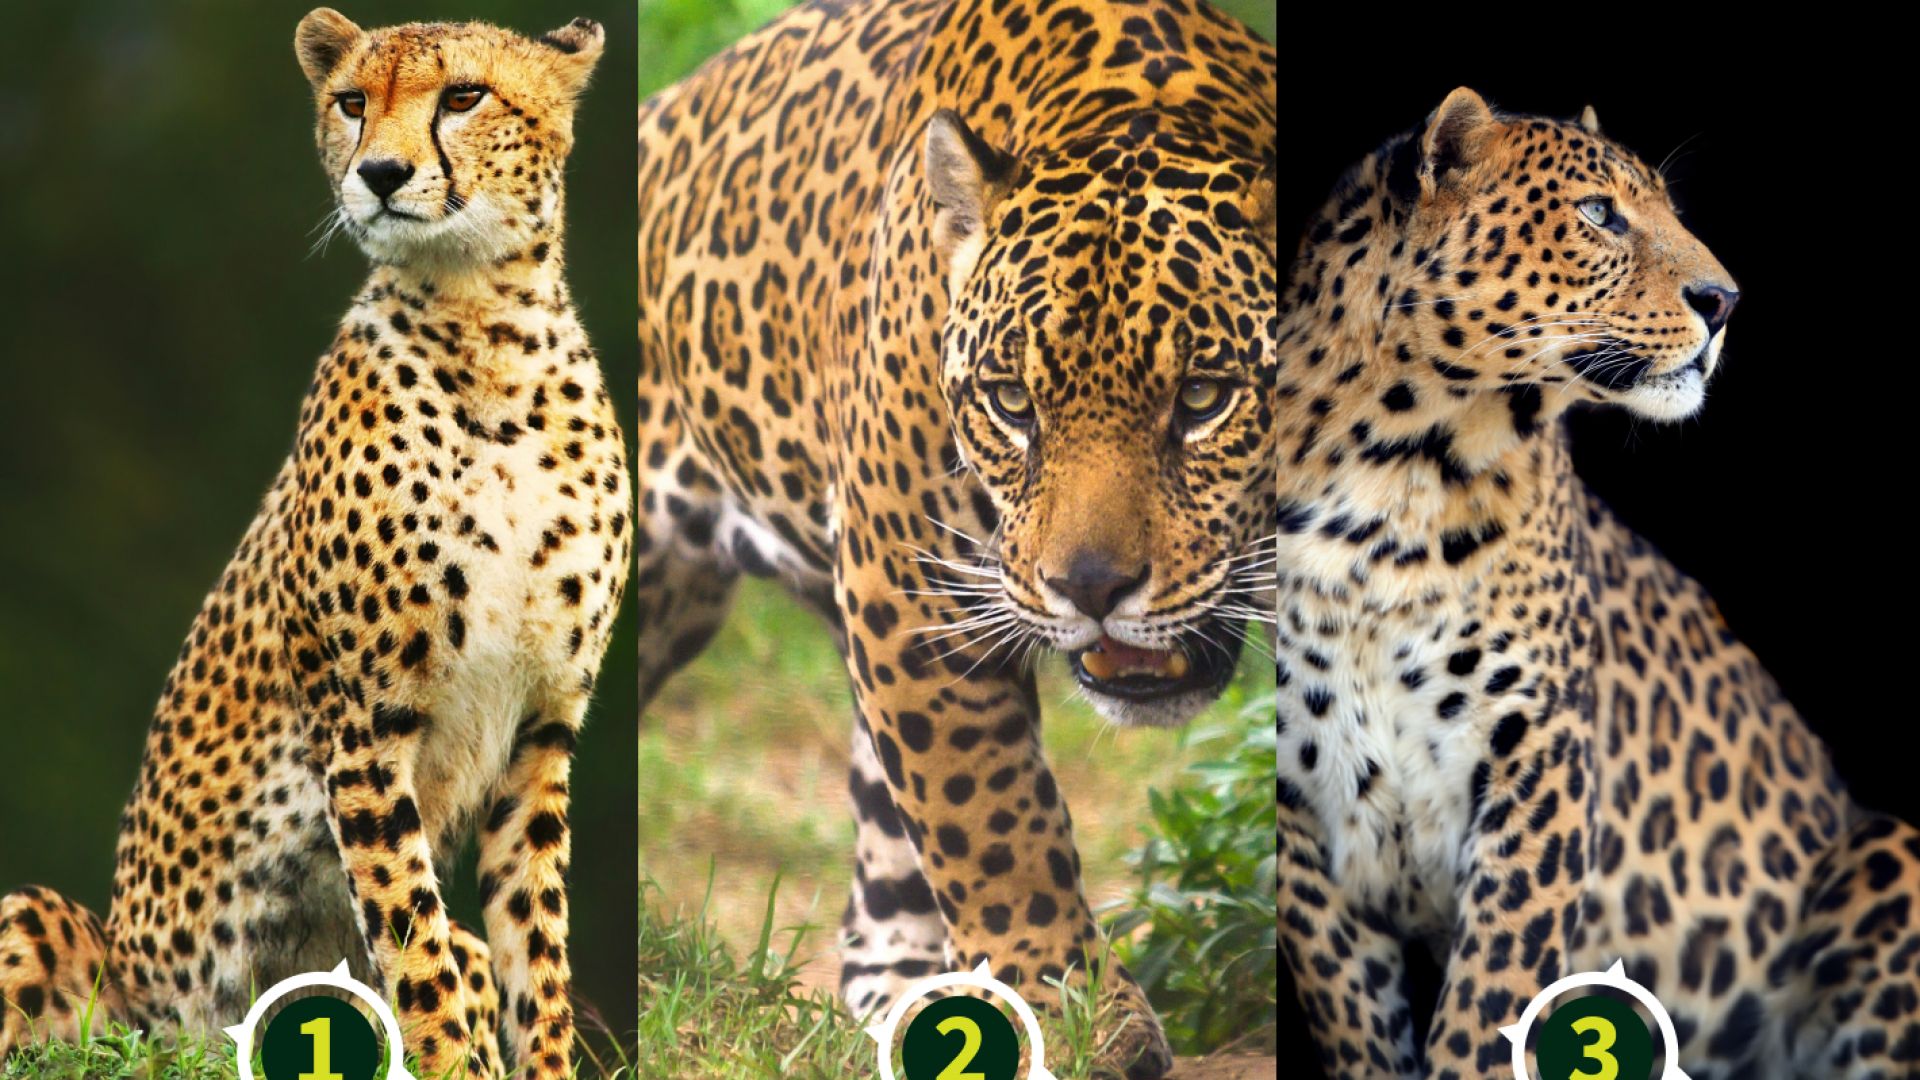 Comment S Appelle La Femelle Du Léopard Différences et ressemblances entre les animaux avec Anigaïdo